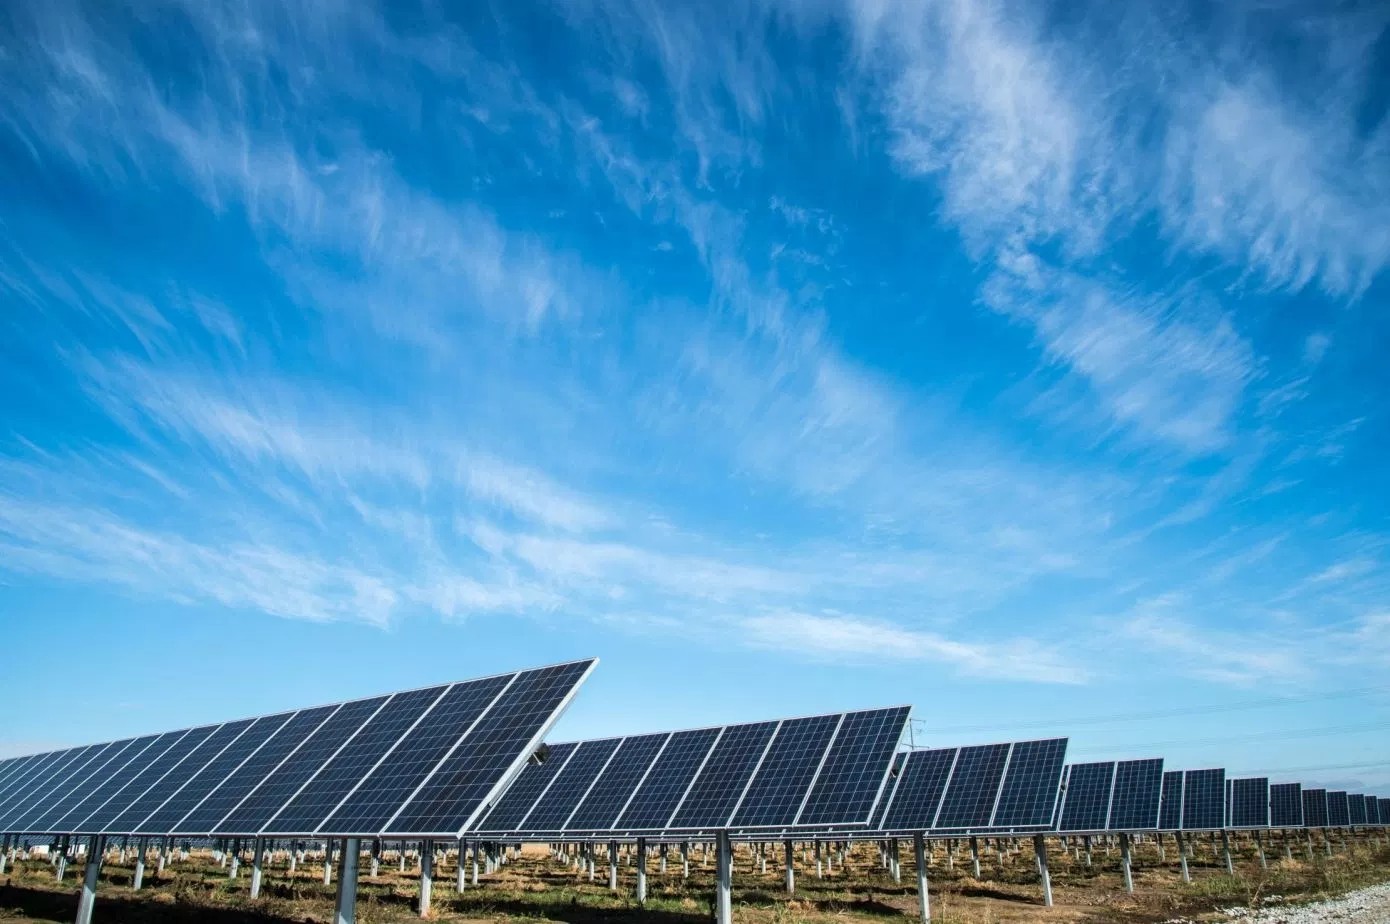 Ďalšou veľkou podporou pre obnoviteľnú energiu by mohla byť nová solárna technológia